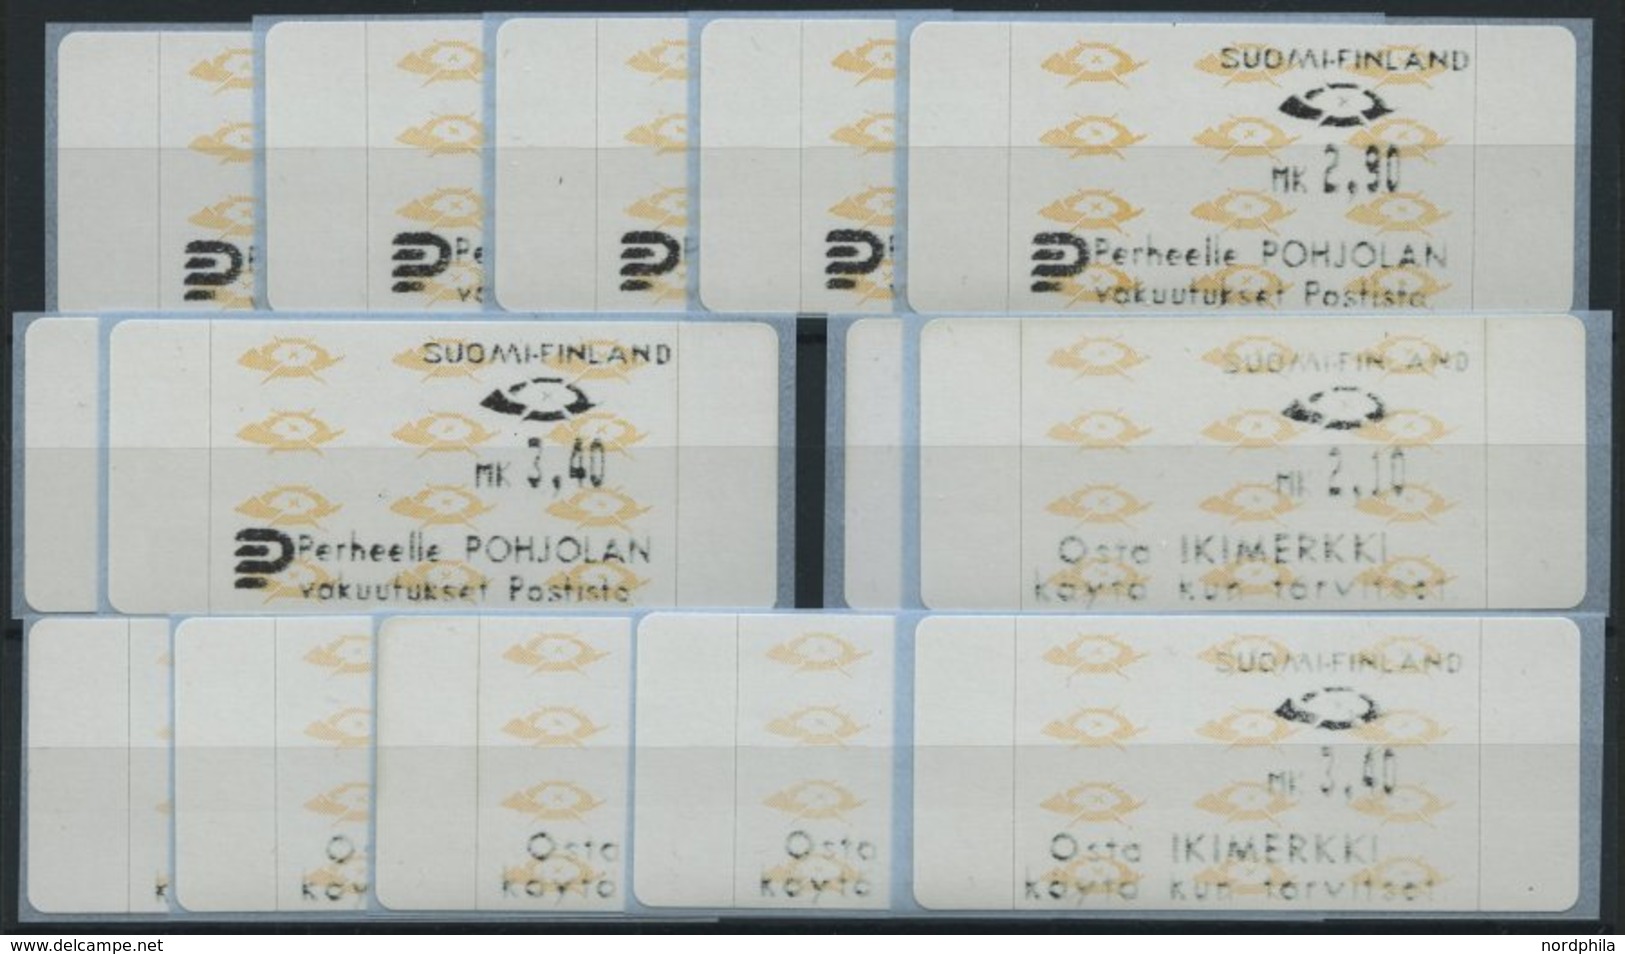 FINNLAND A 12.3,12.4 **, Automatenmarken: 1992, Je 7 Verschiedene Wertstufen Perheelle Pohljolan Und Osta Ikimerkki, Pra - Gebraucht